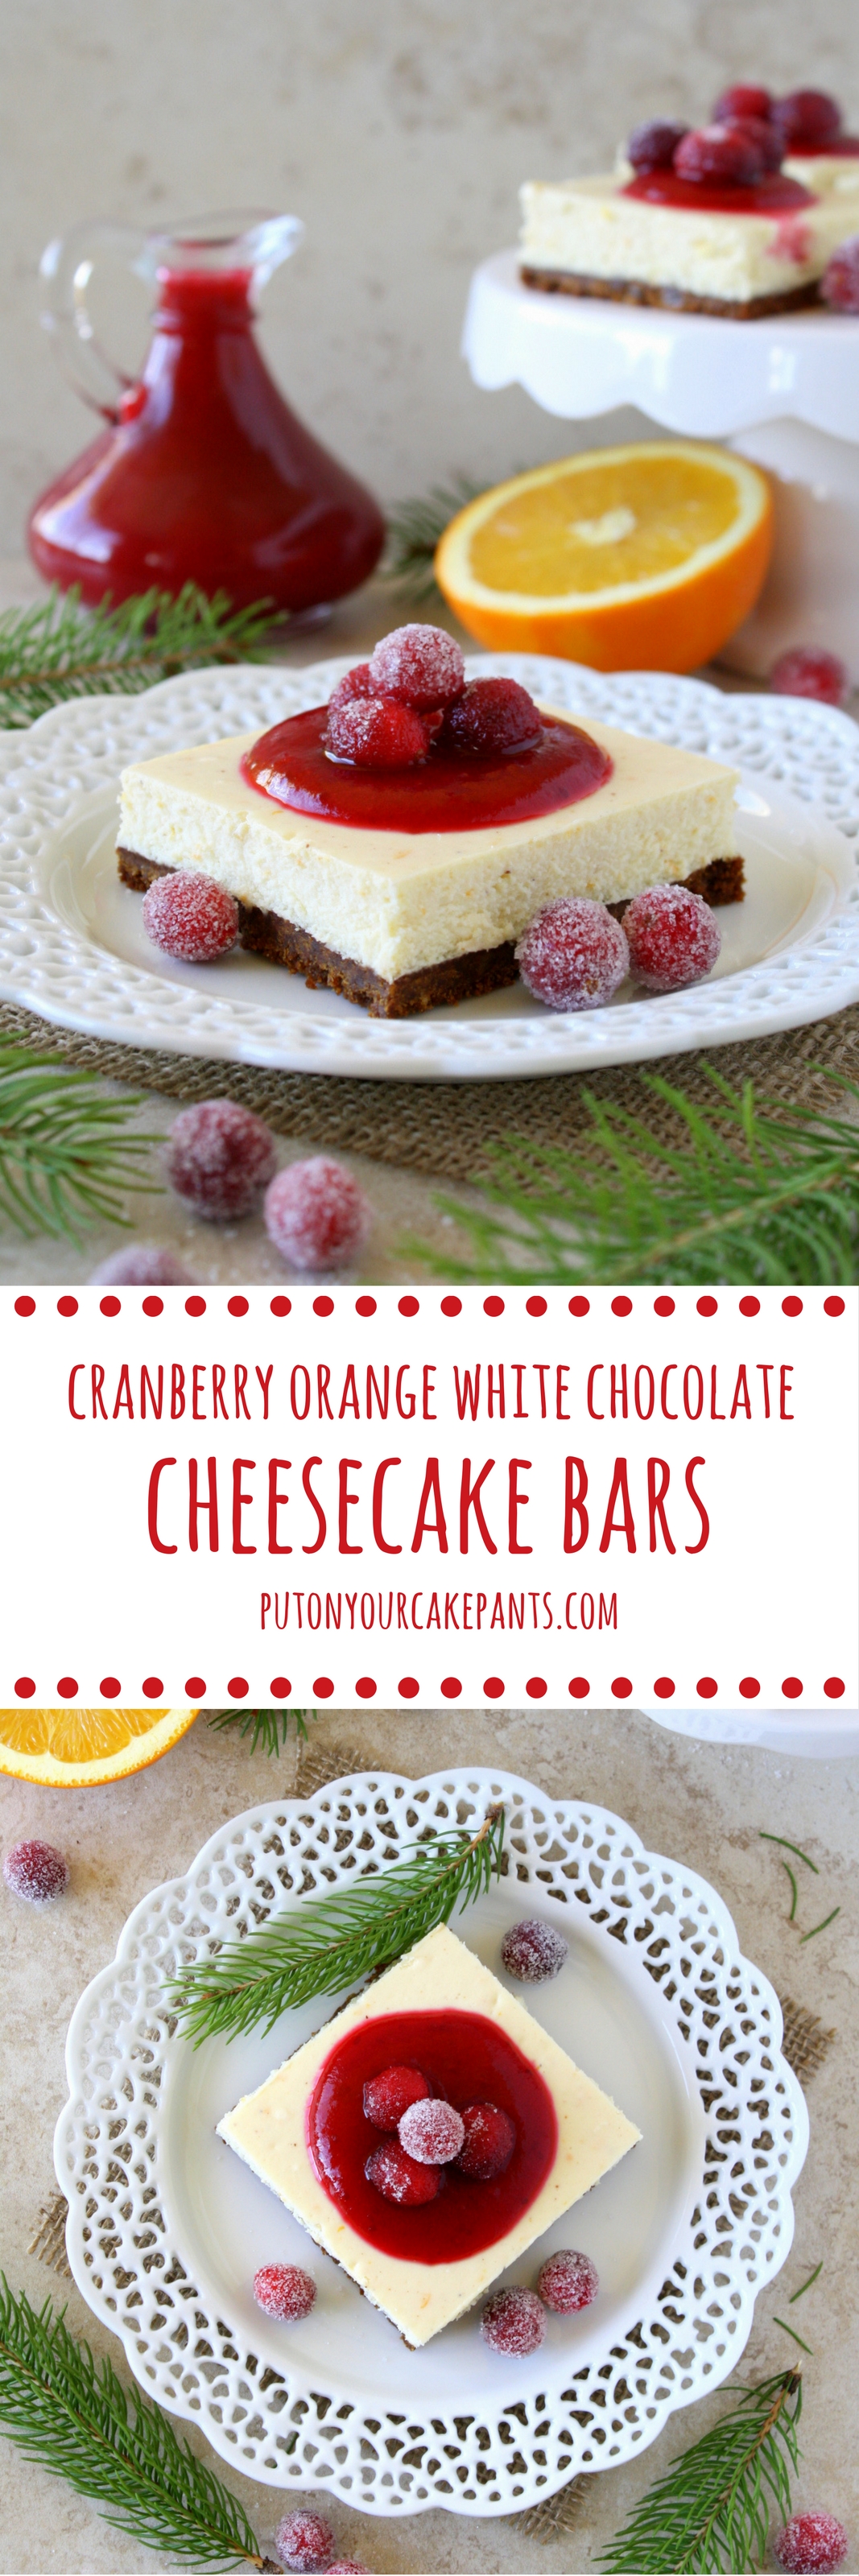 cranberry orange white chocolate cheesecake bars